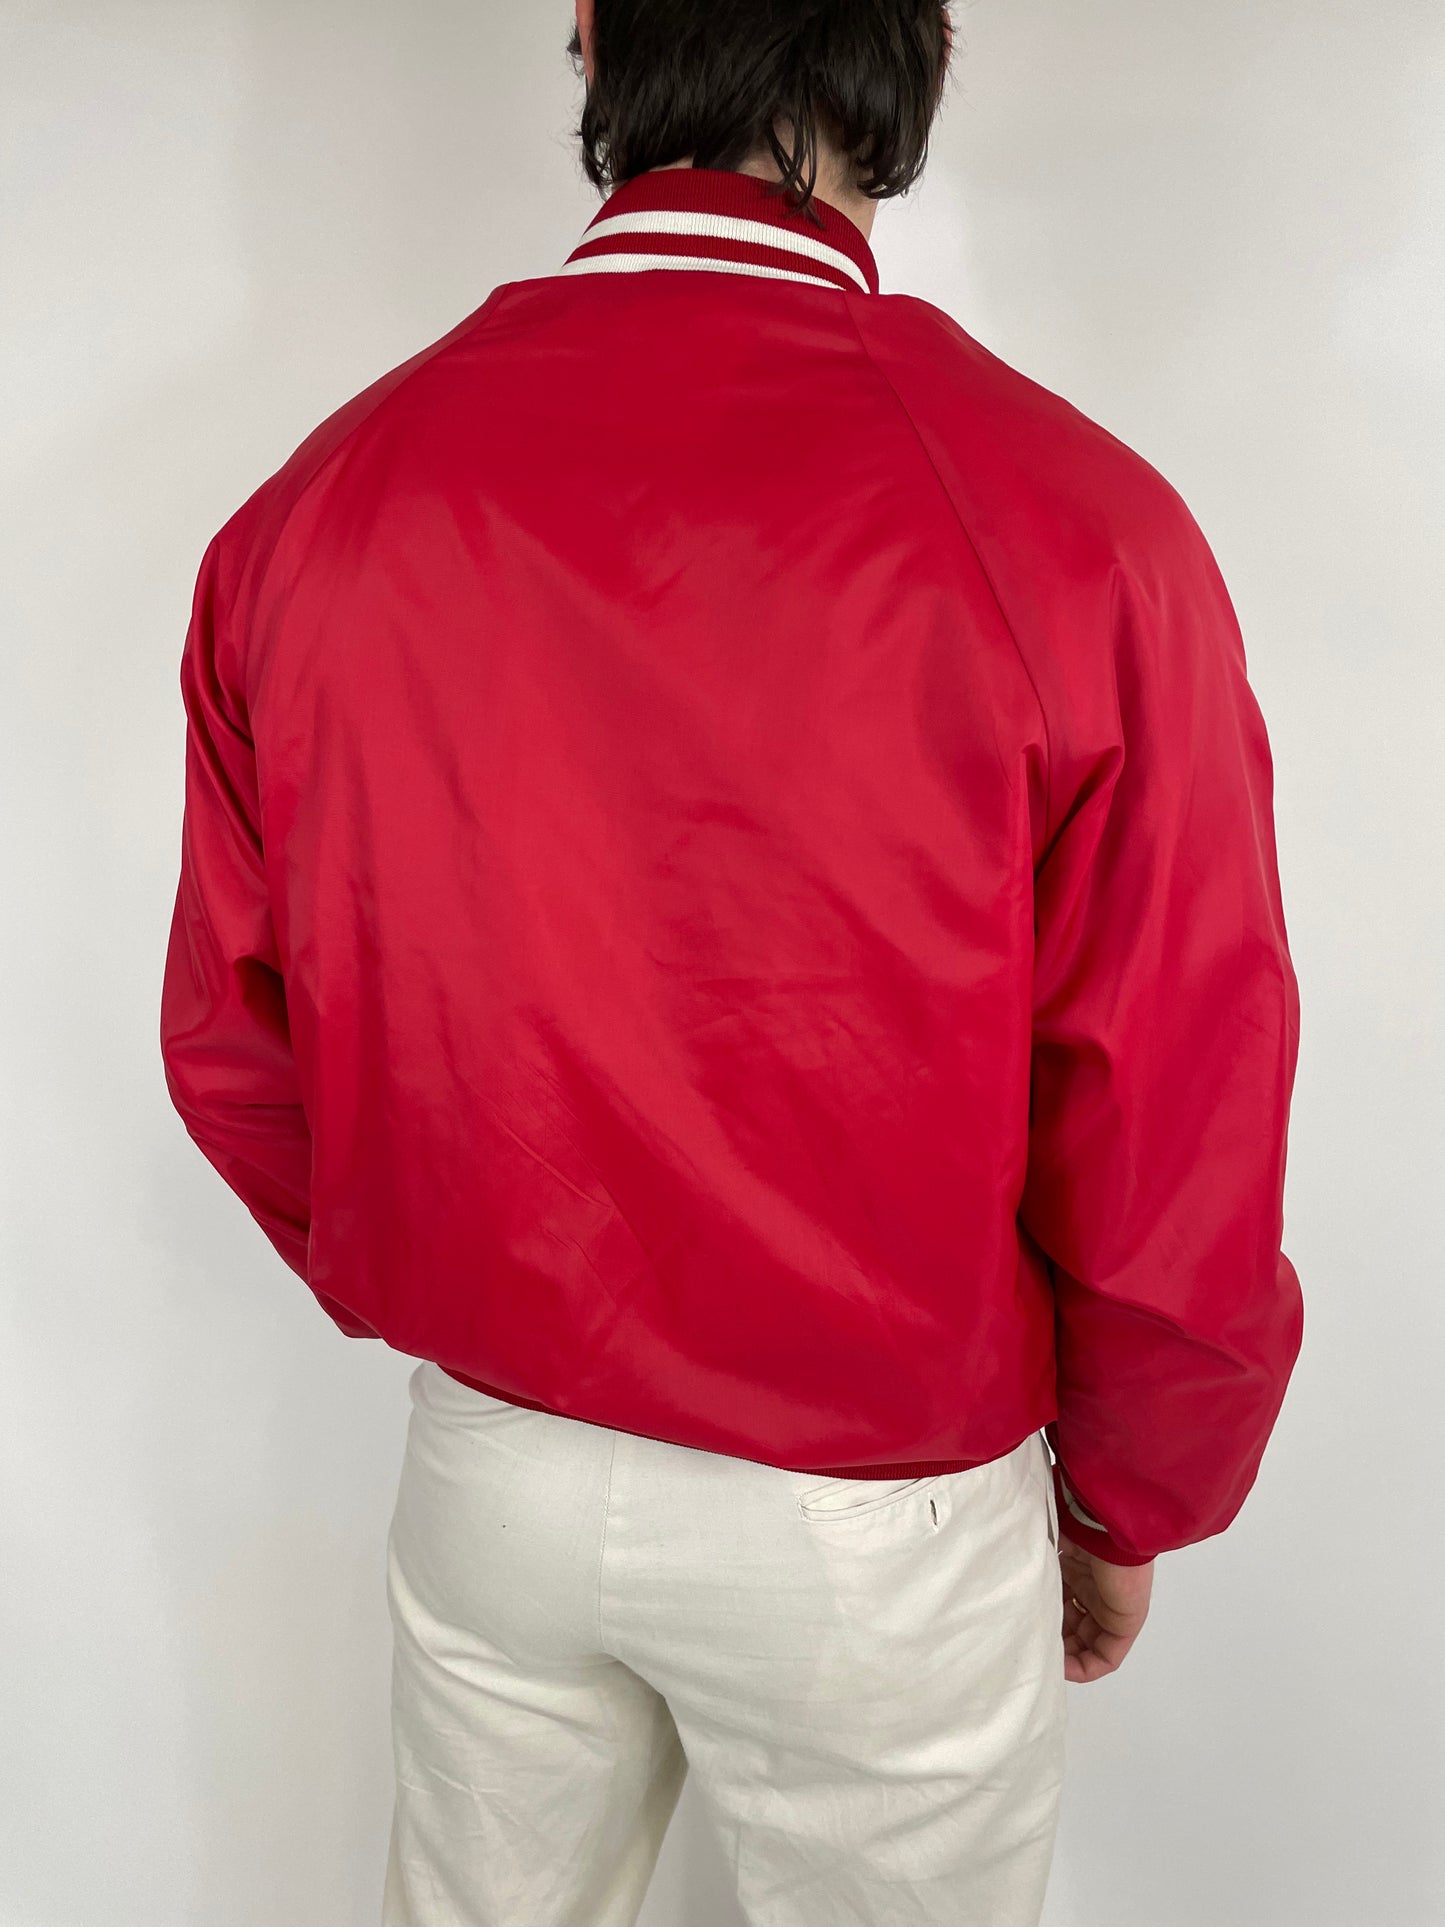 Velva Sheen Cincinnati 1979s College Jacket